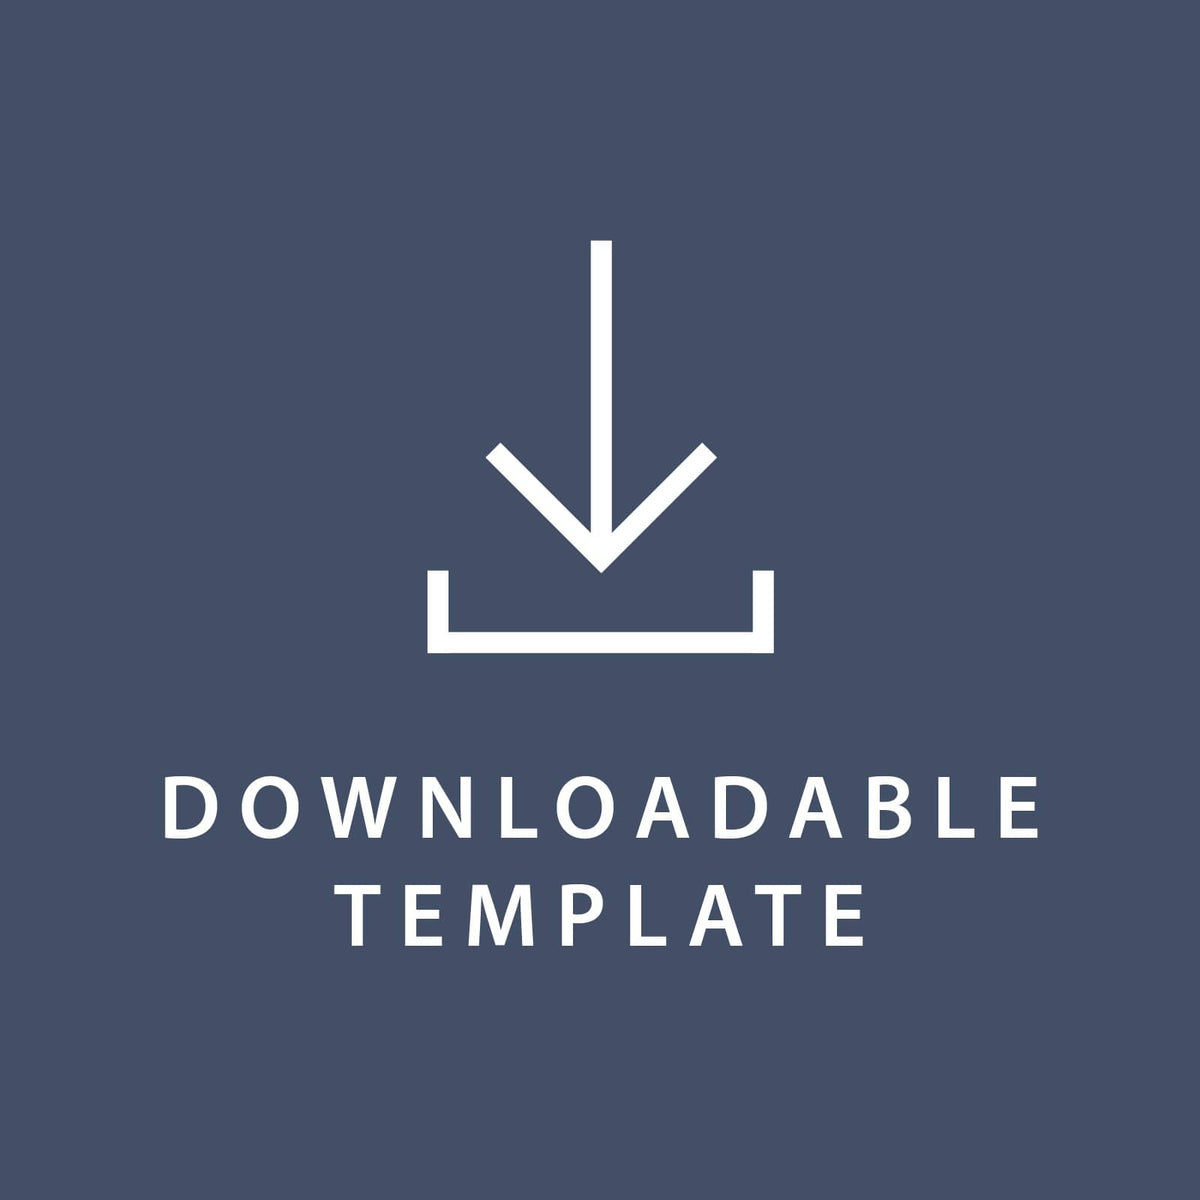 Template for 8.5 x 11 Invitations Gartner Studios Template tmplt0177